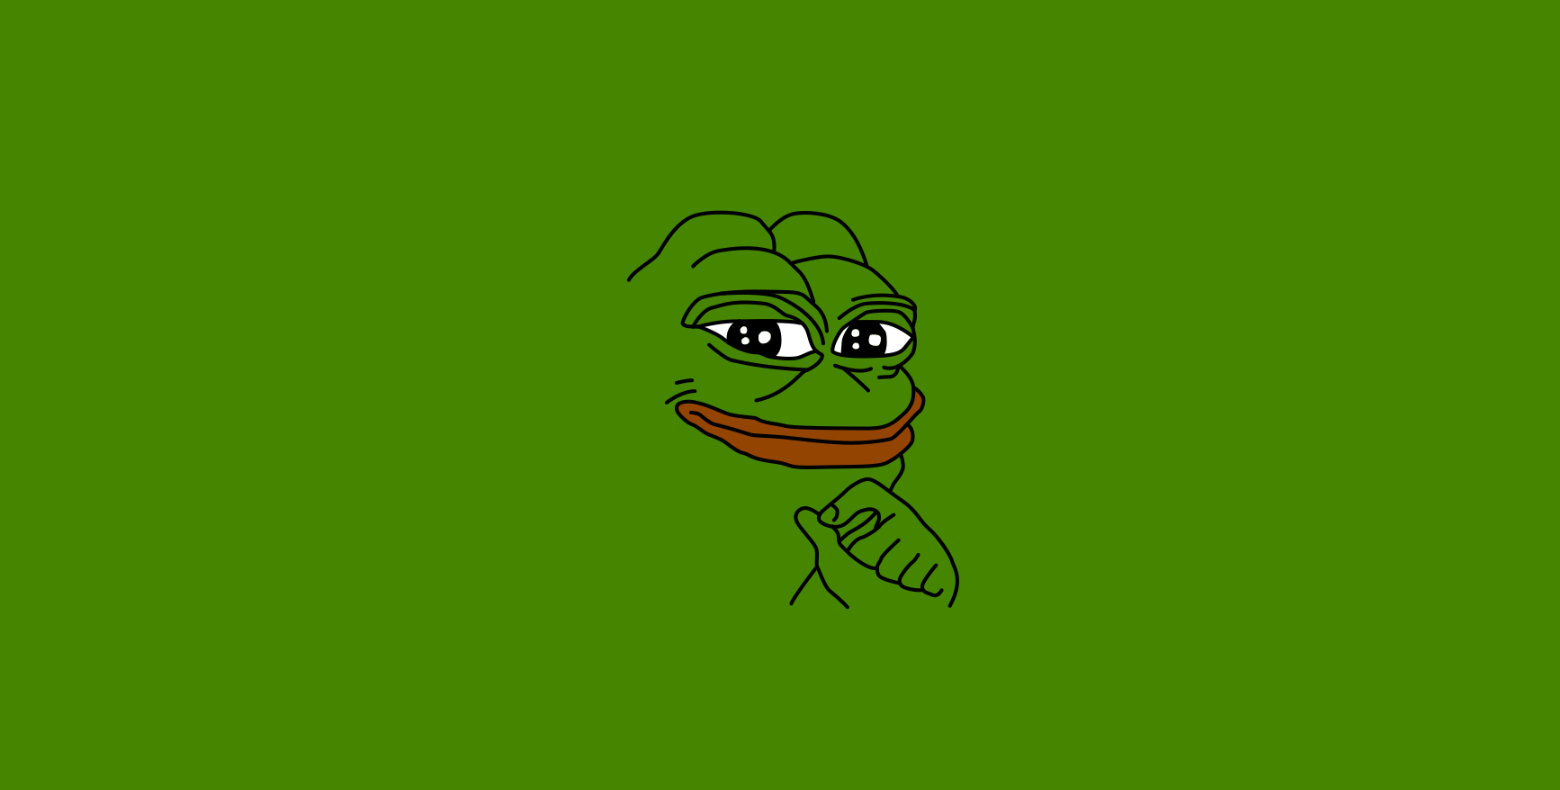 Memecoin Pepe krijgt ongewenste aandacht van oplichters